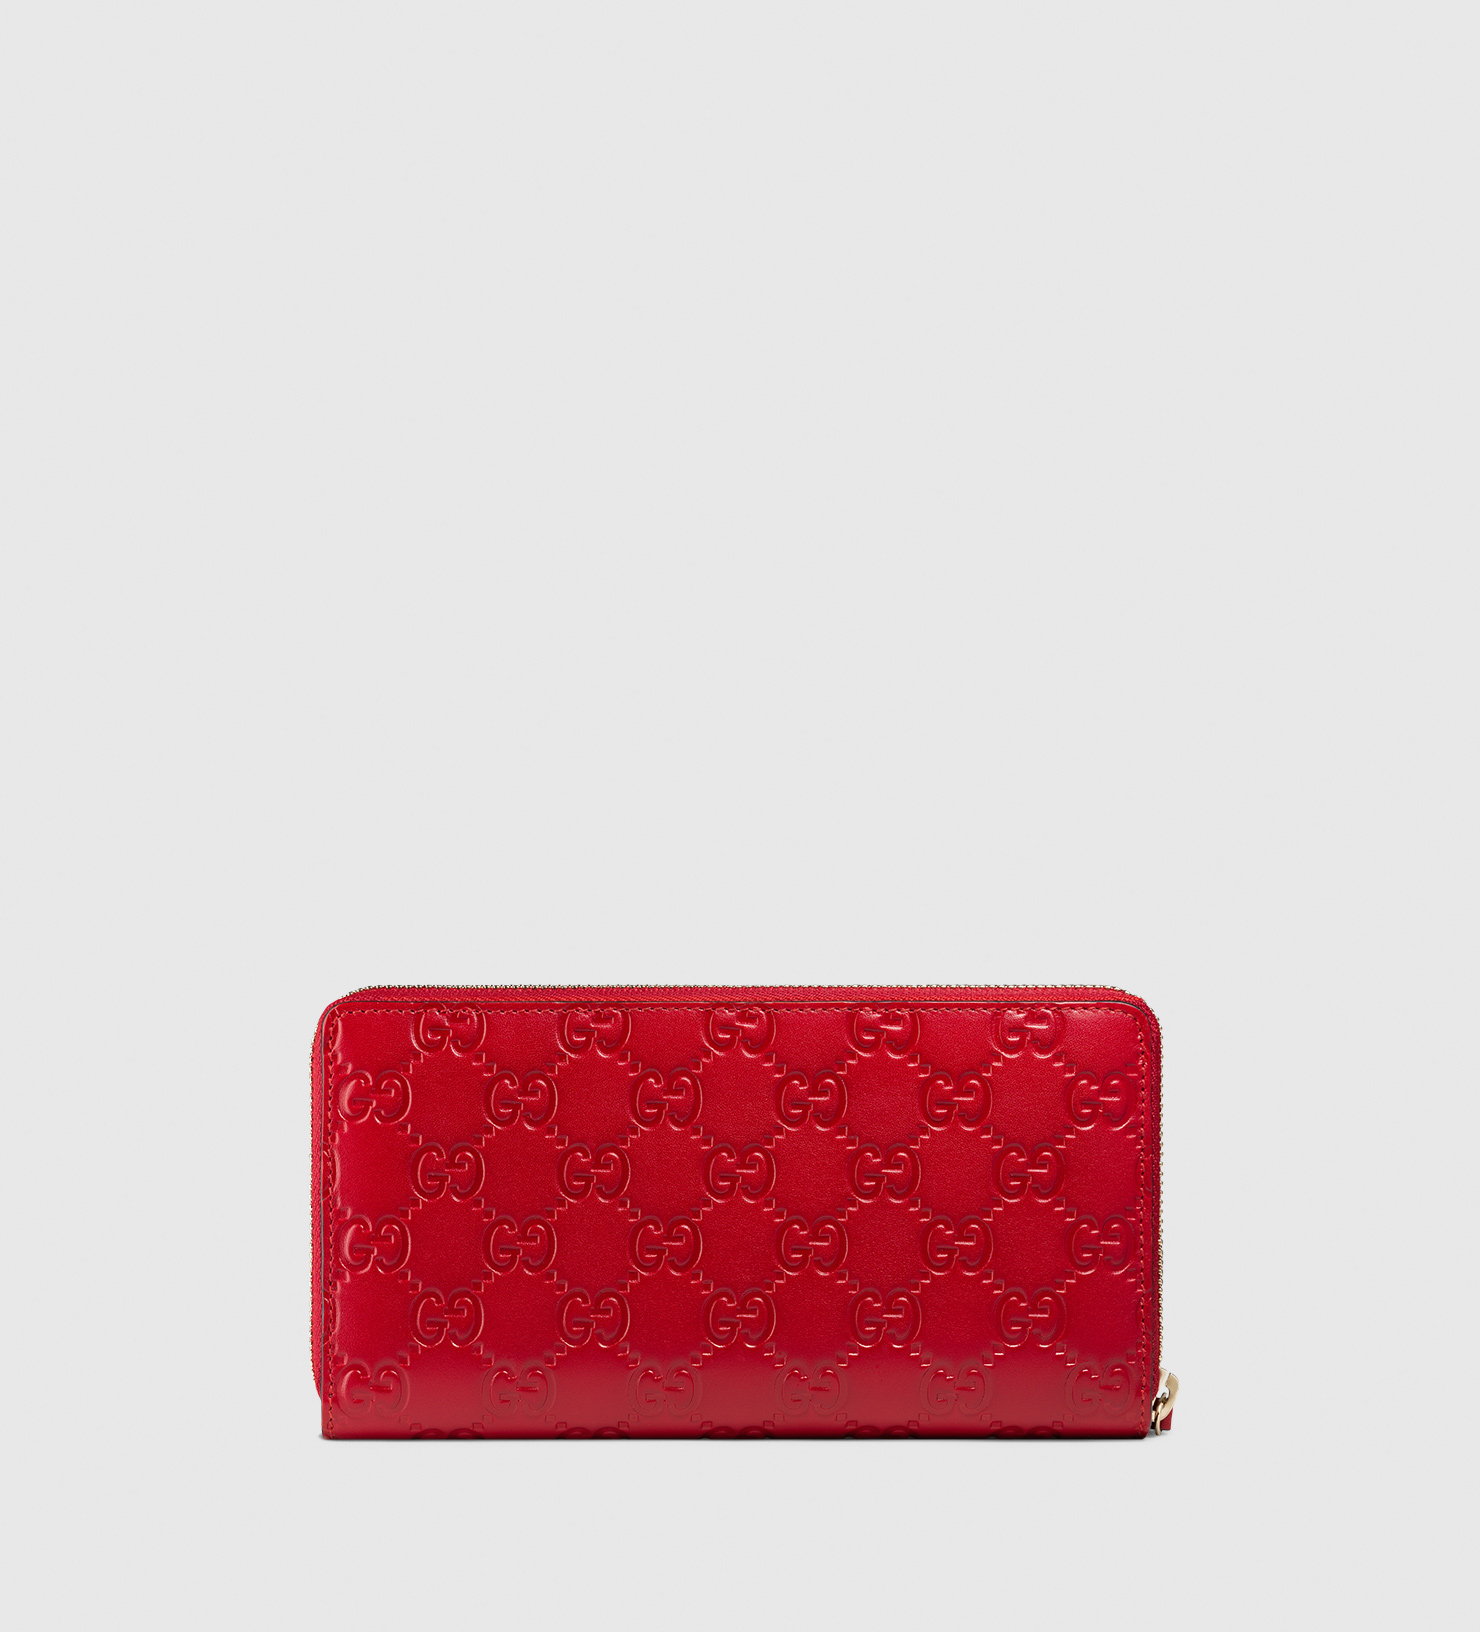 gucci red zip around wallet